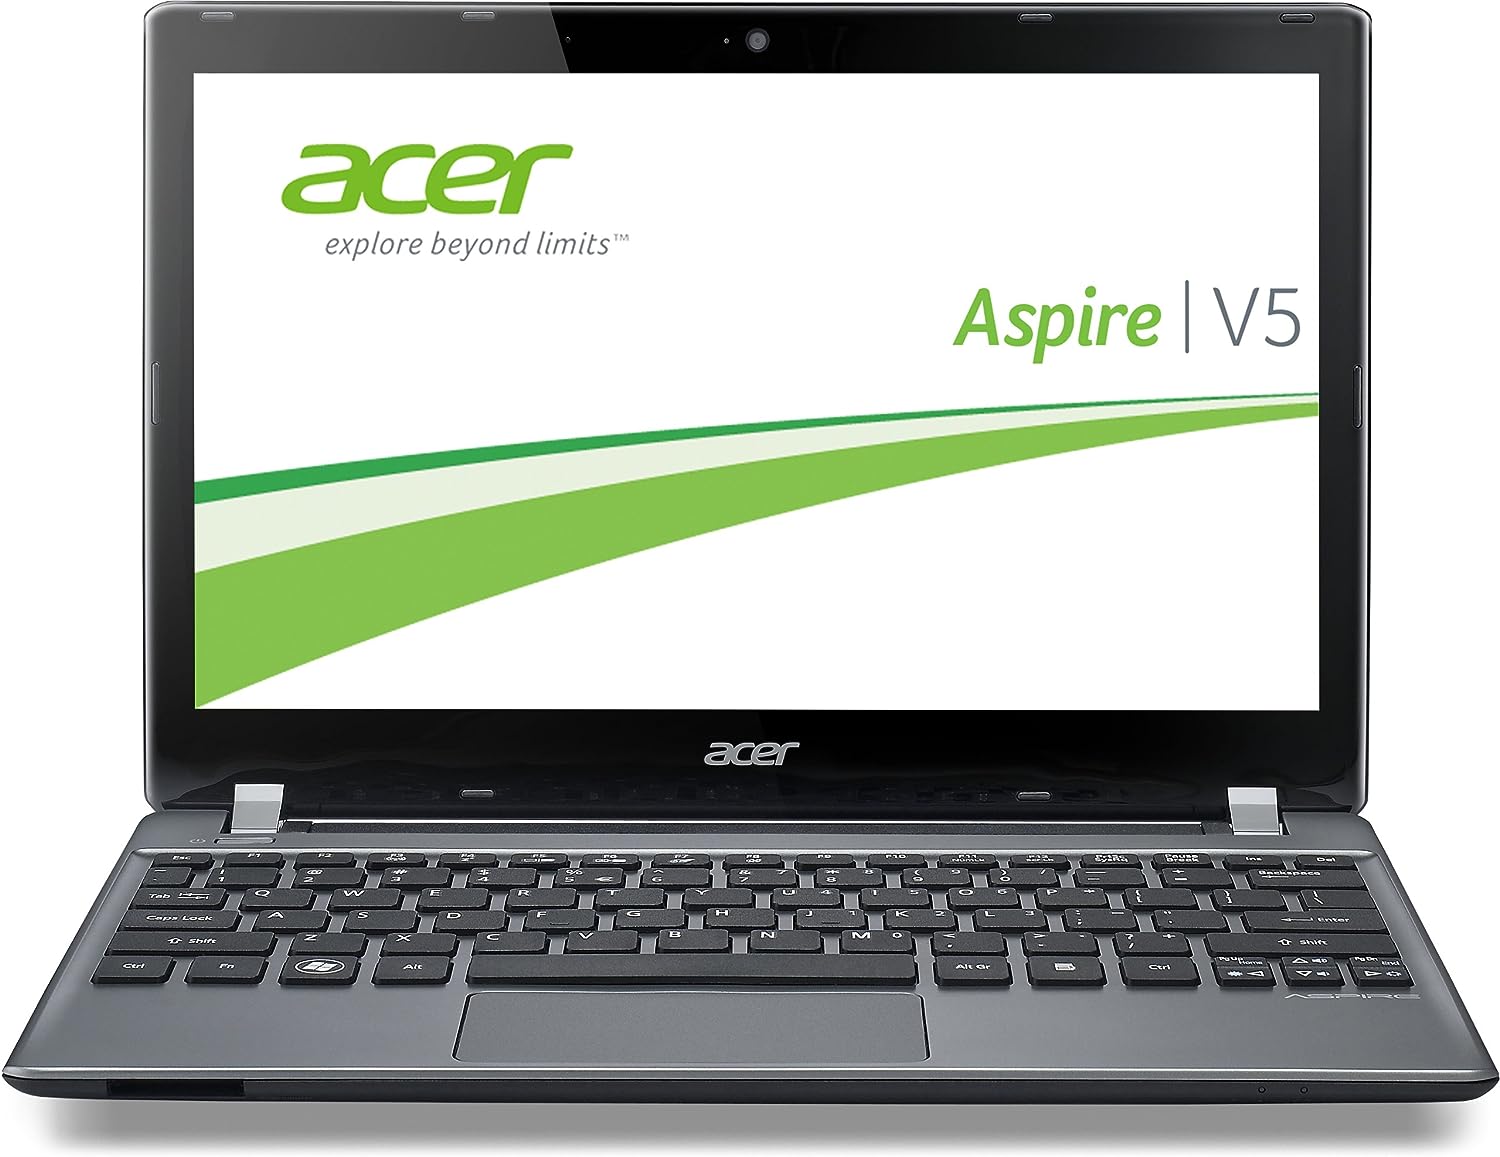 Acer Aspire V5-552 Notebook